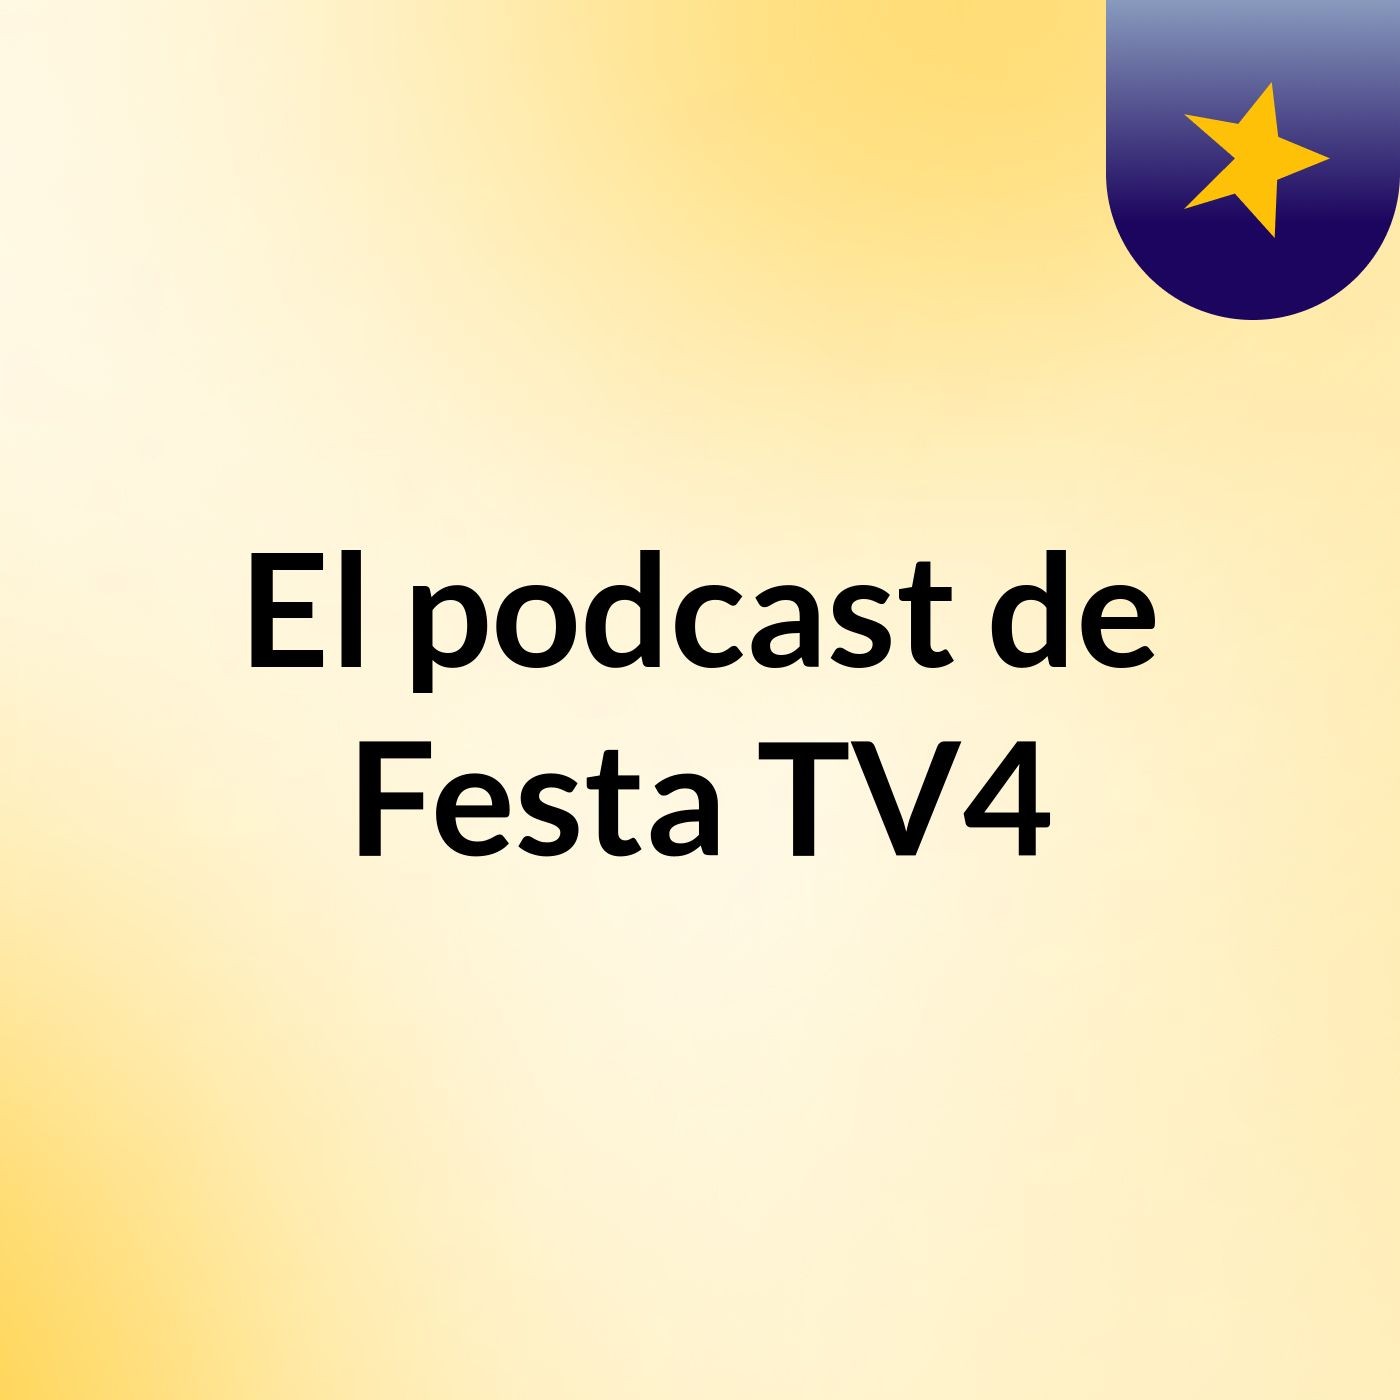 El podcast de Festa TV4